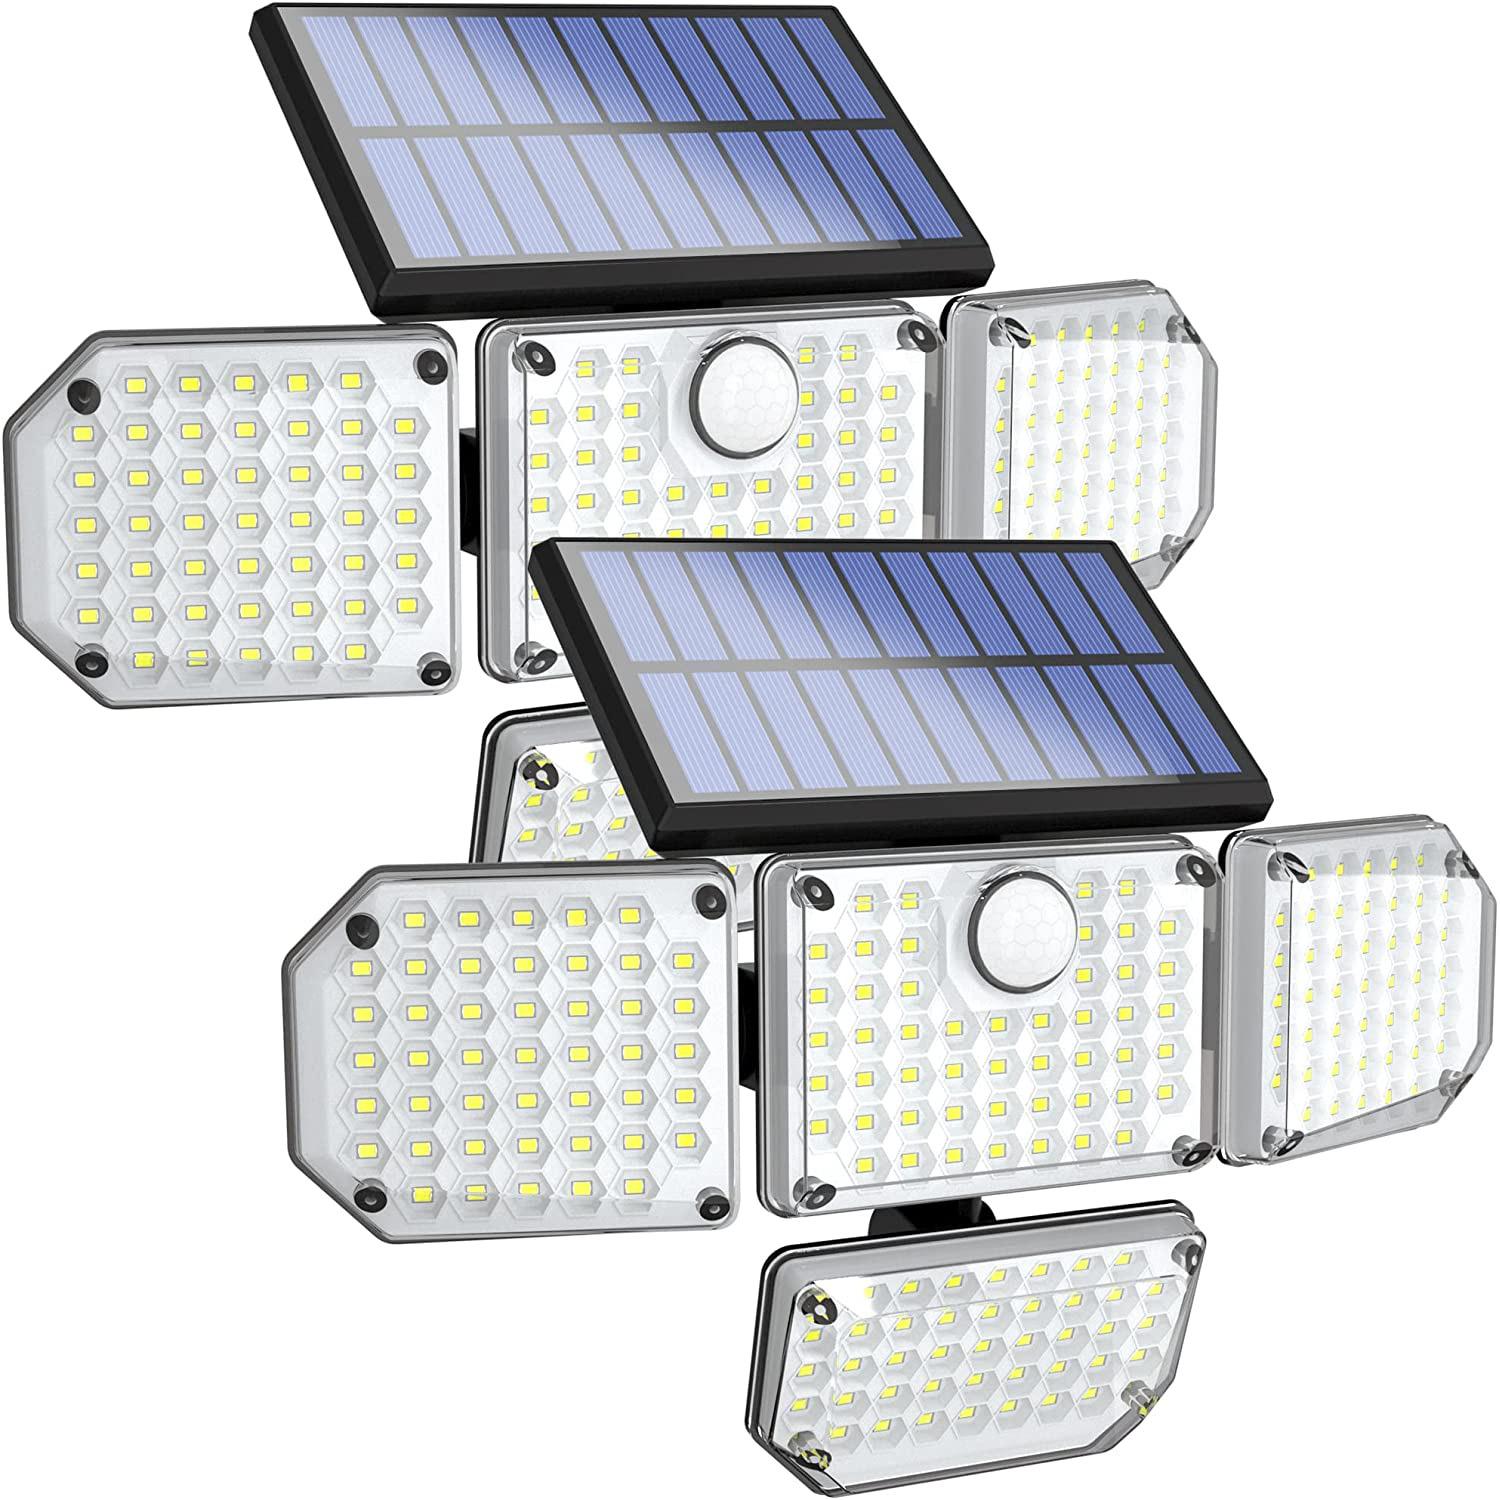 182-LED Outdoor Adjustable Waterproof Motion Sensor Solar Lights for $19.83